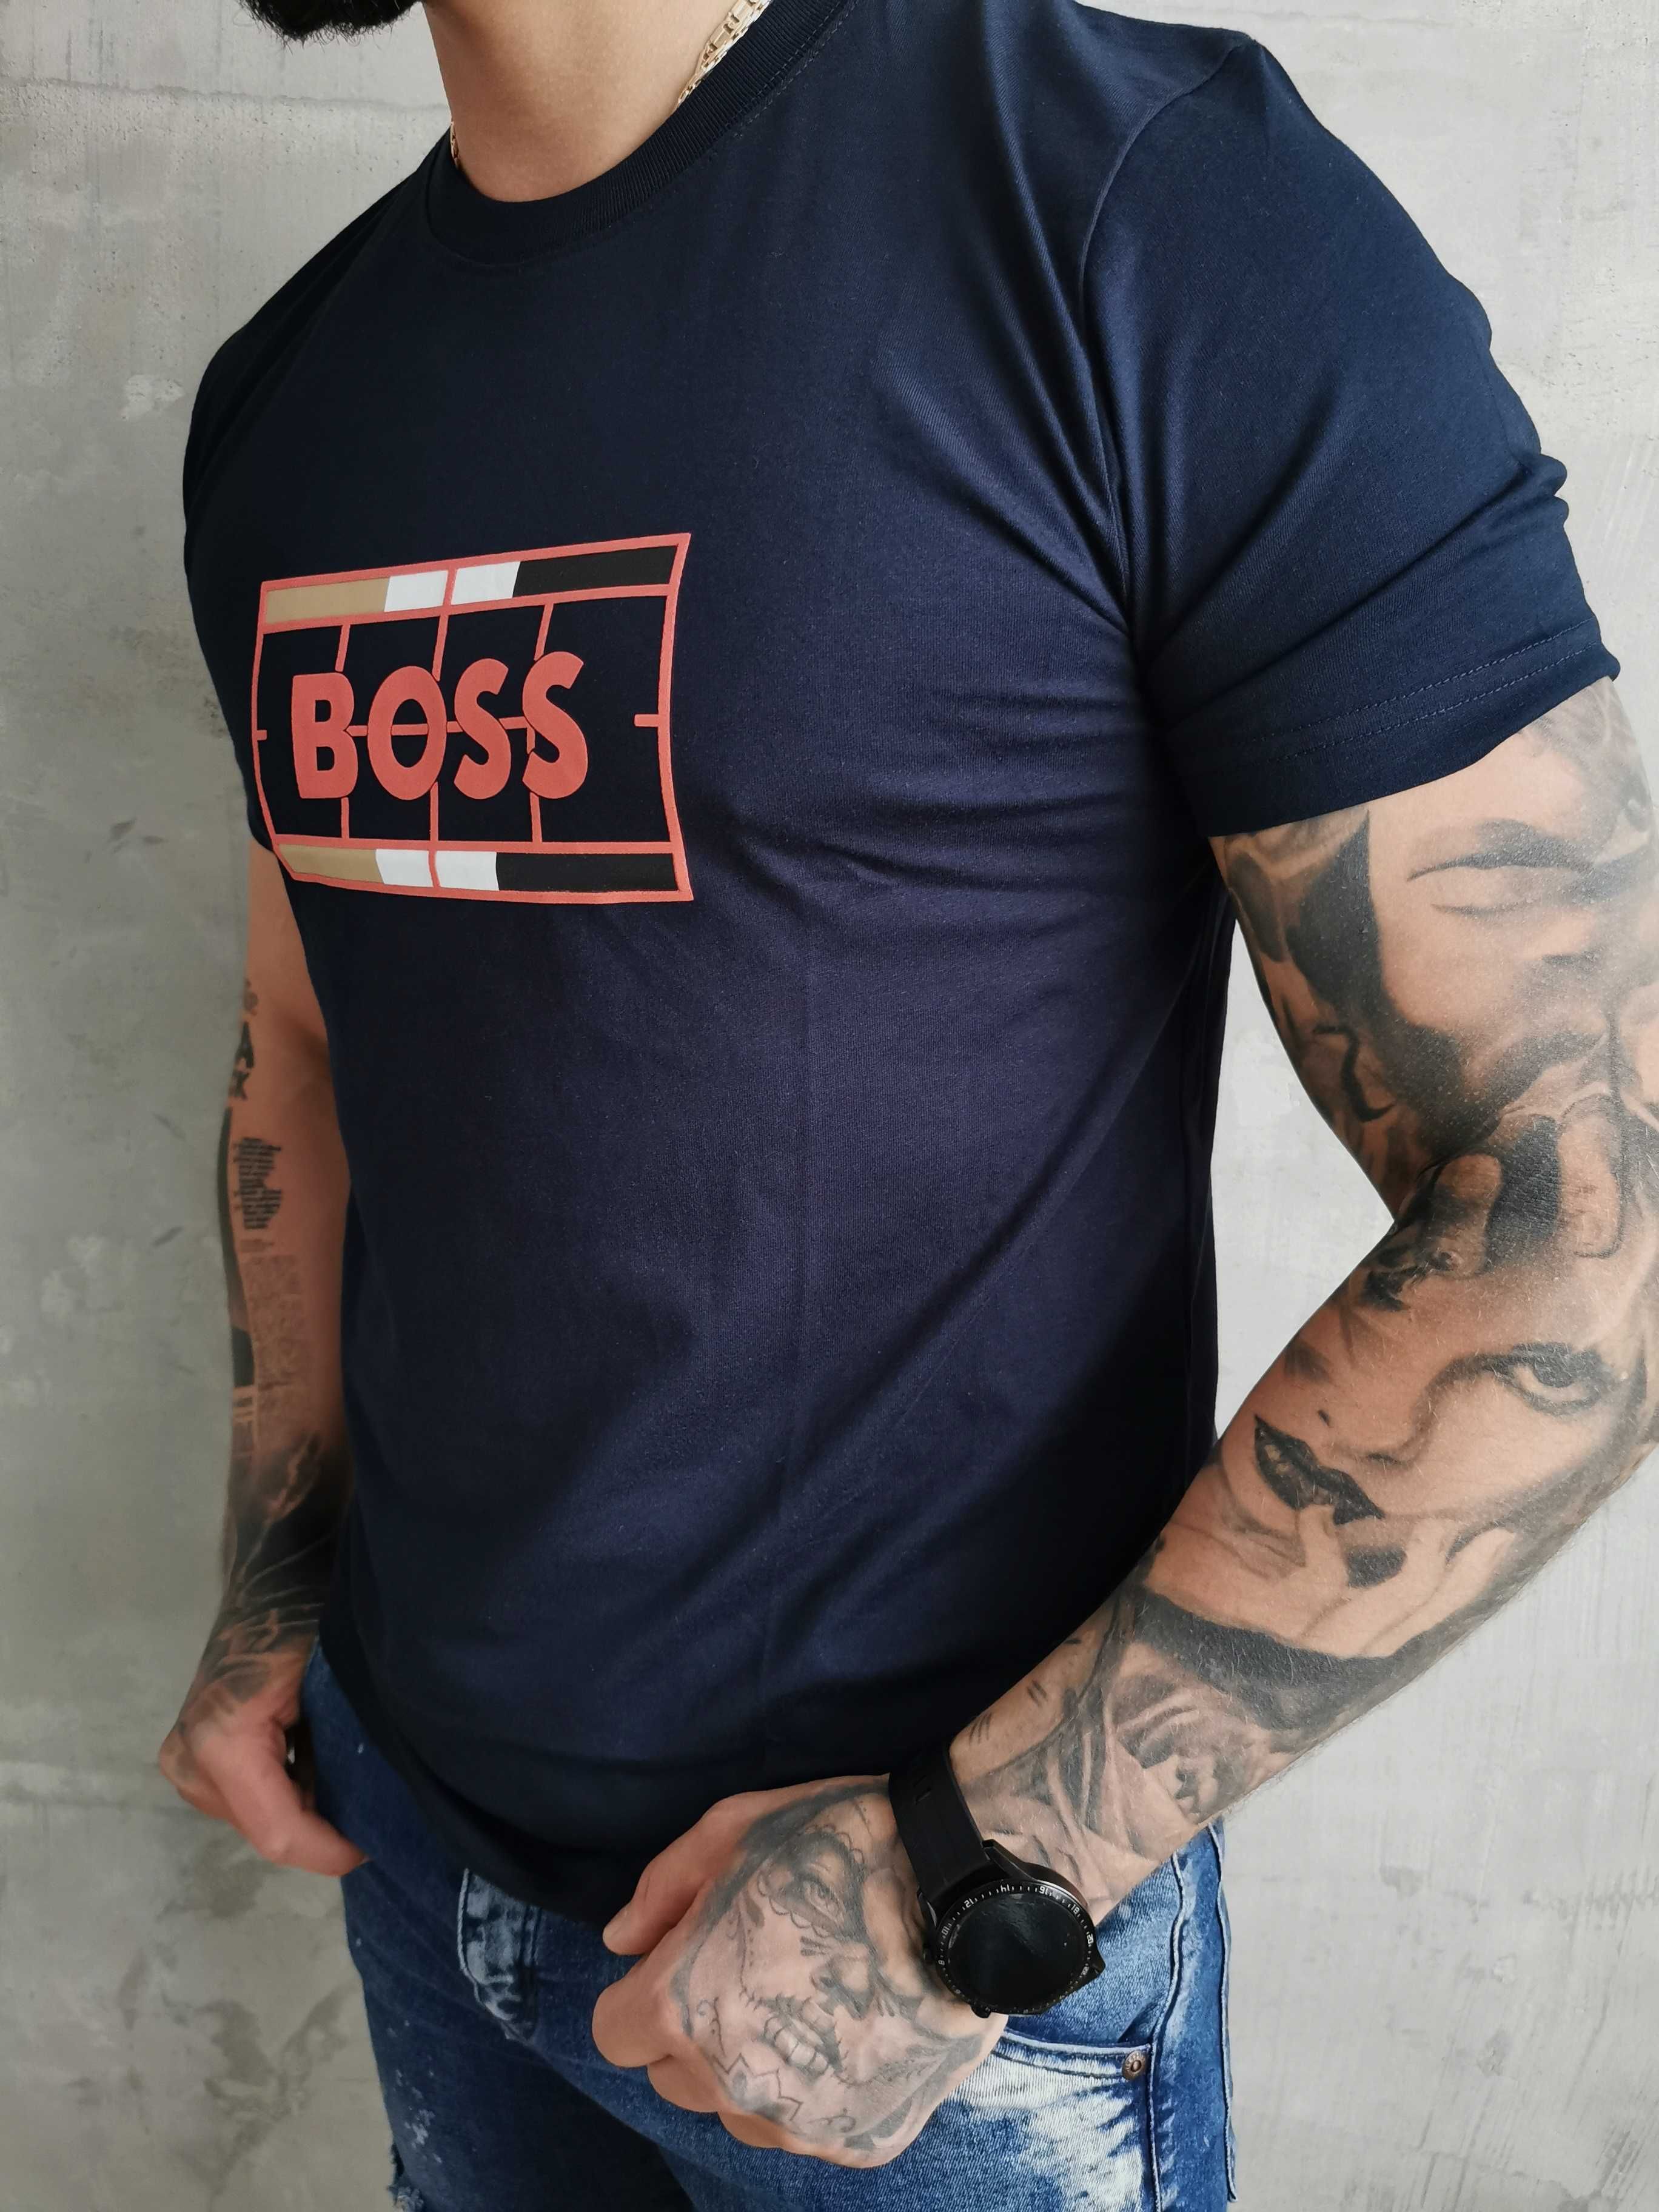 Hugo Boss koszulka męska t-shirt L, 3XL